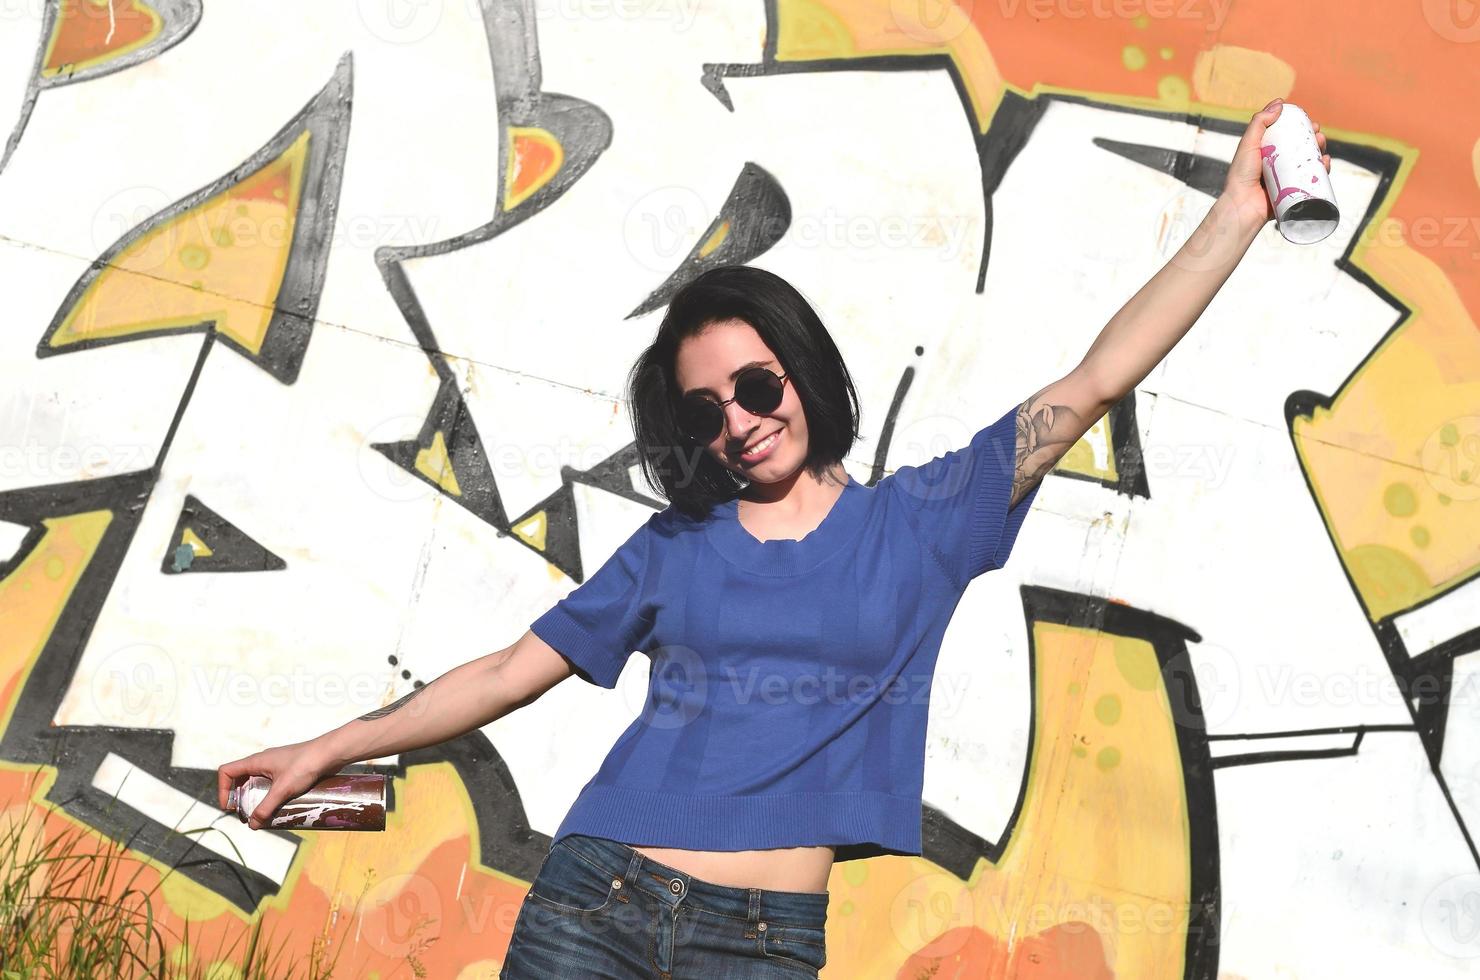 Porträt eines emotionalen jungen Mädchens mit schwarzen Haaren und Piercings. Foto eines Mädchens mit Aerosol-Farbdosen in den Händen auf einem Graffiti-Wand-Hintergrund. das Konzept der Straßenkunst und die Verwendung von Aerosolfarben